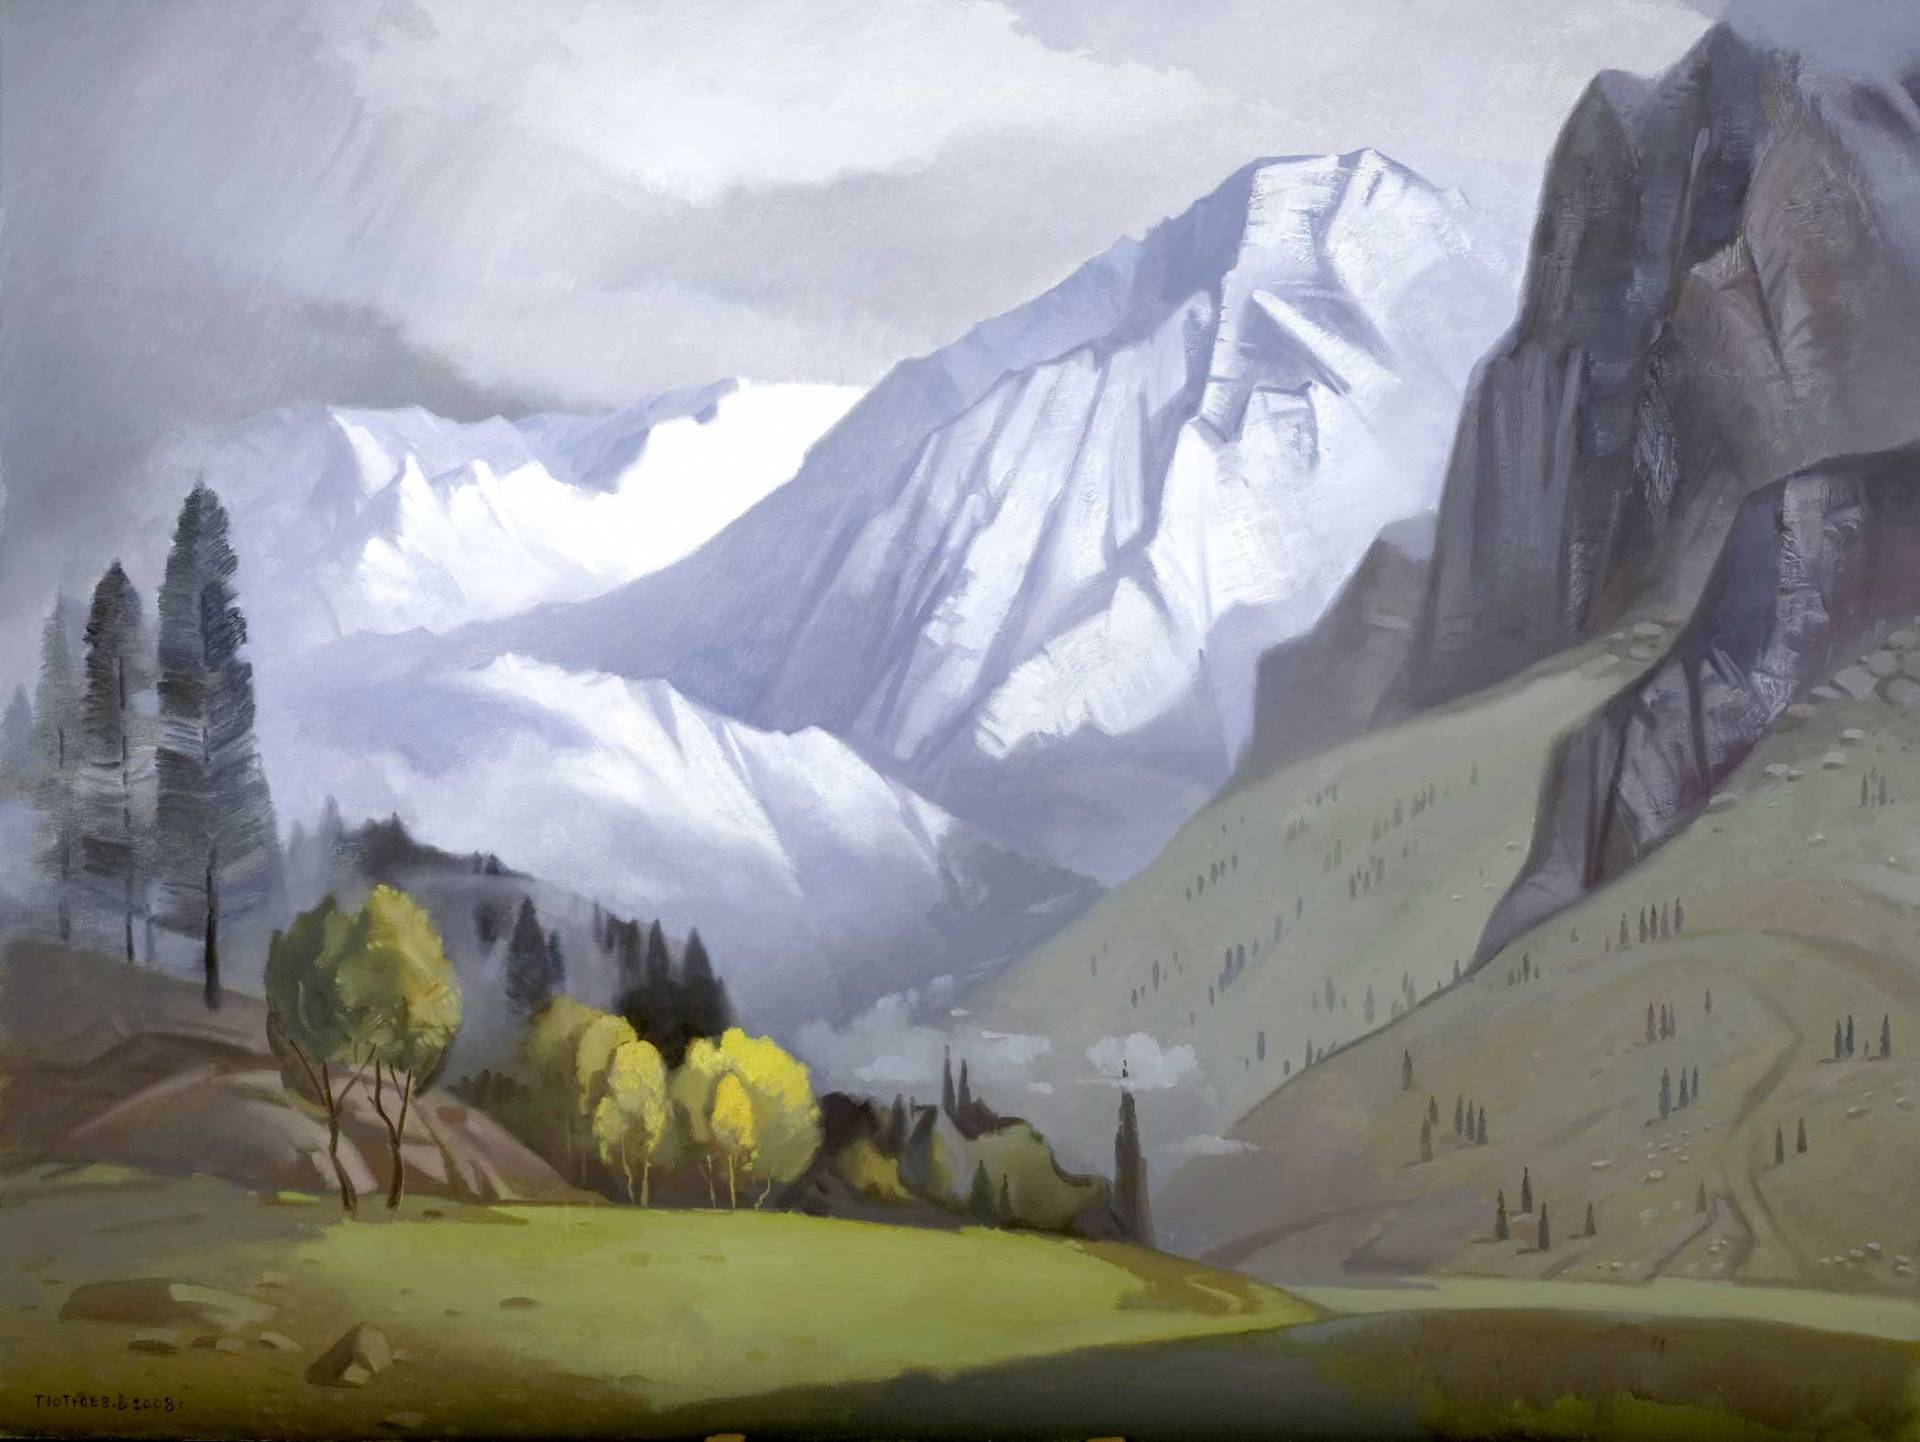 Himalayas. Pass, Vladimir Tyutyuev, Buy the painting Oil